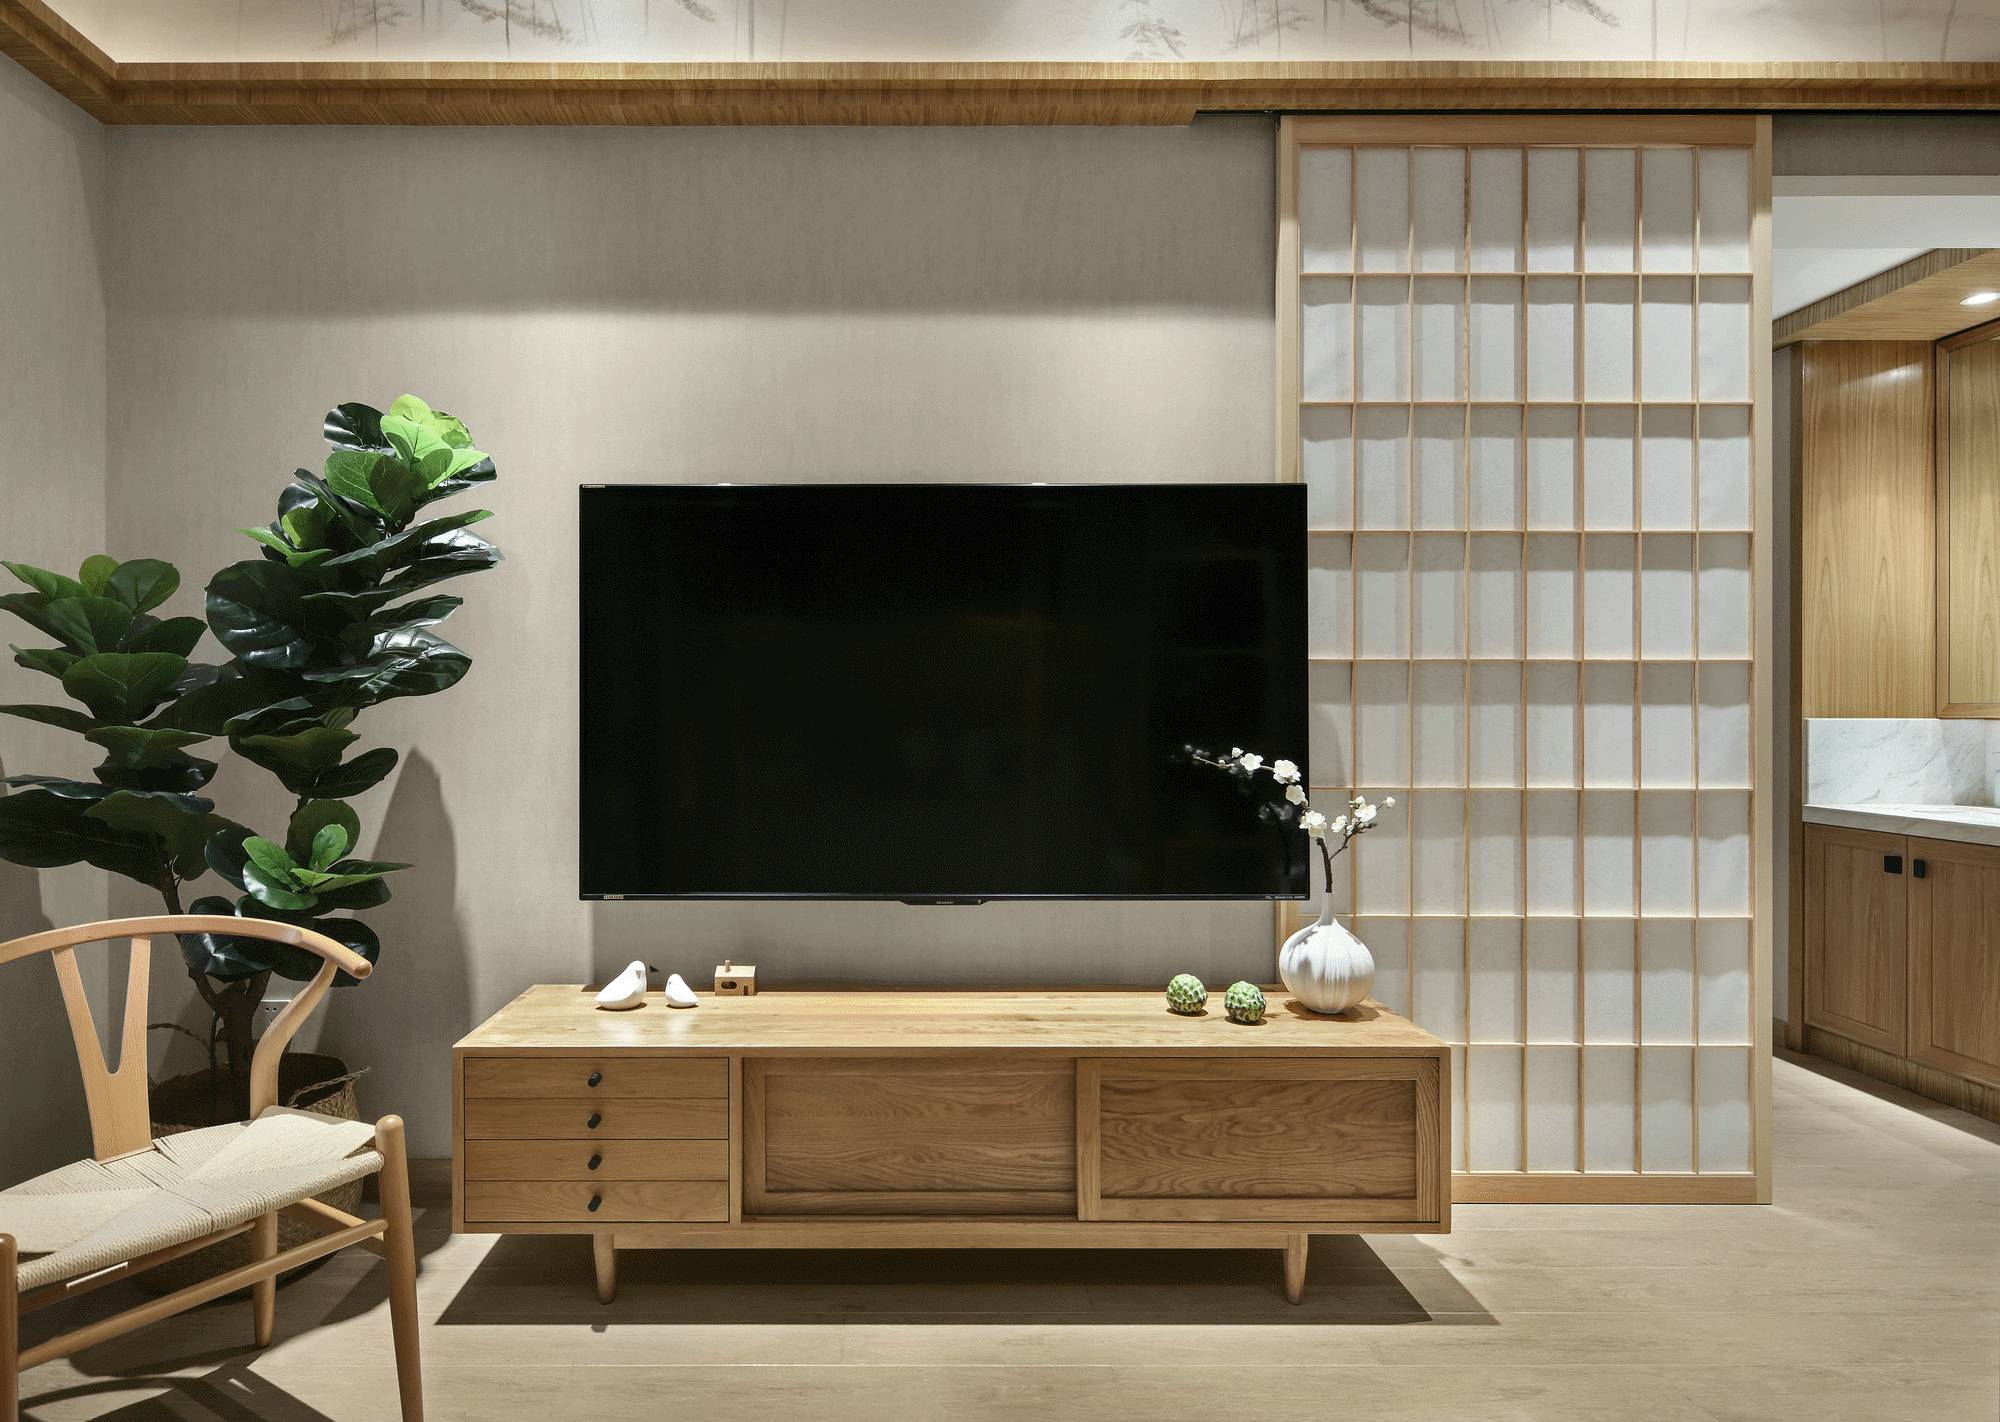 日式简约风格家装设计室内装修效果图-客厅电视背景墙